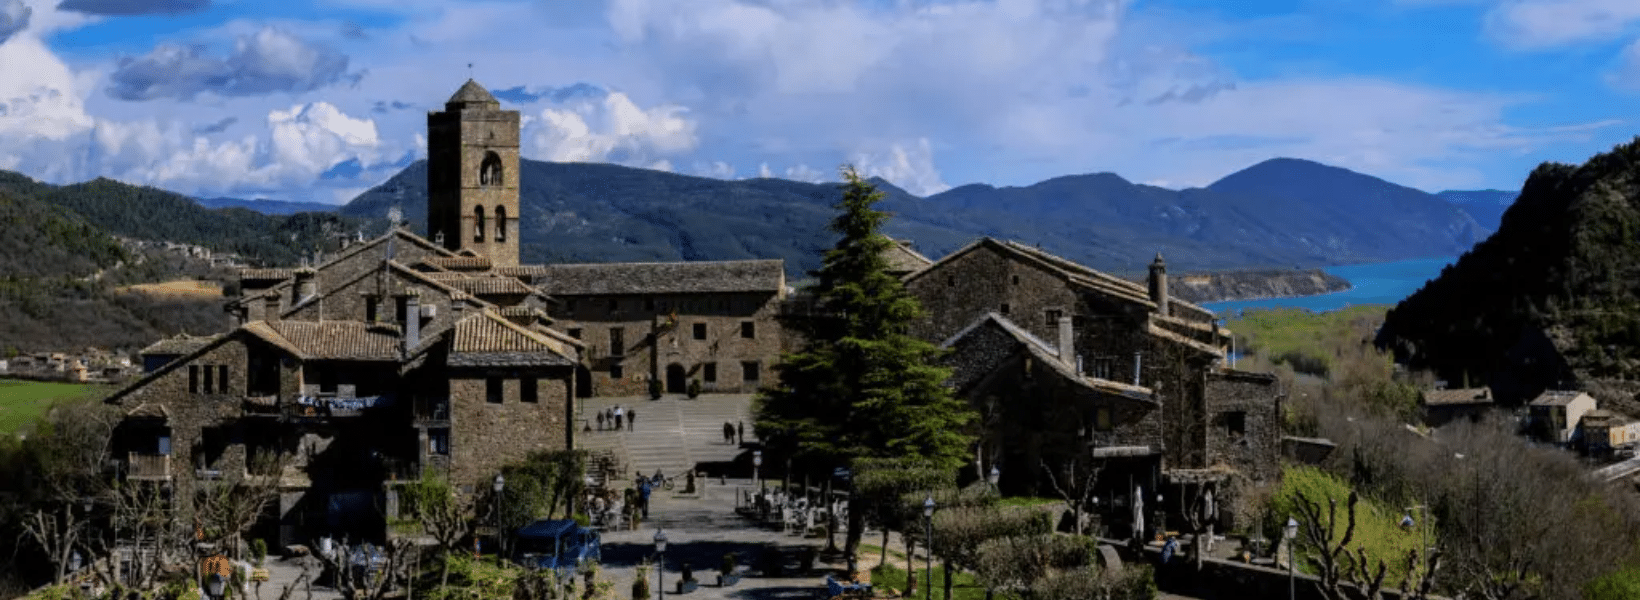 Villa de Ainsa - Sobrarbe Pirineo Diseno sin titulo 69